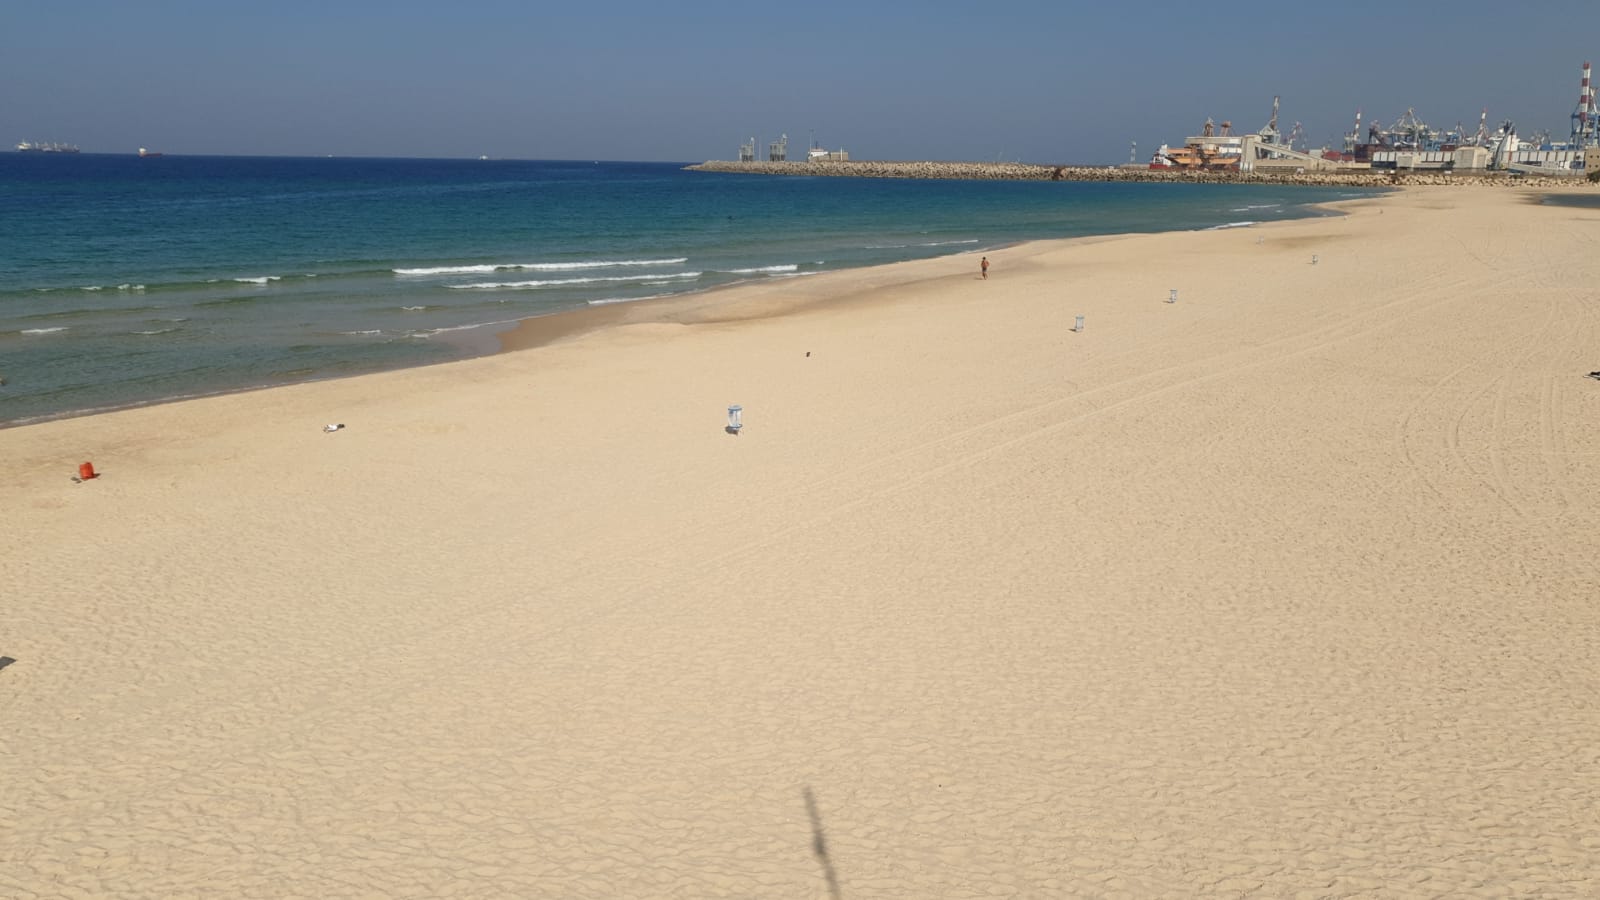 חוף הים באשדוד